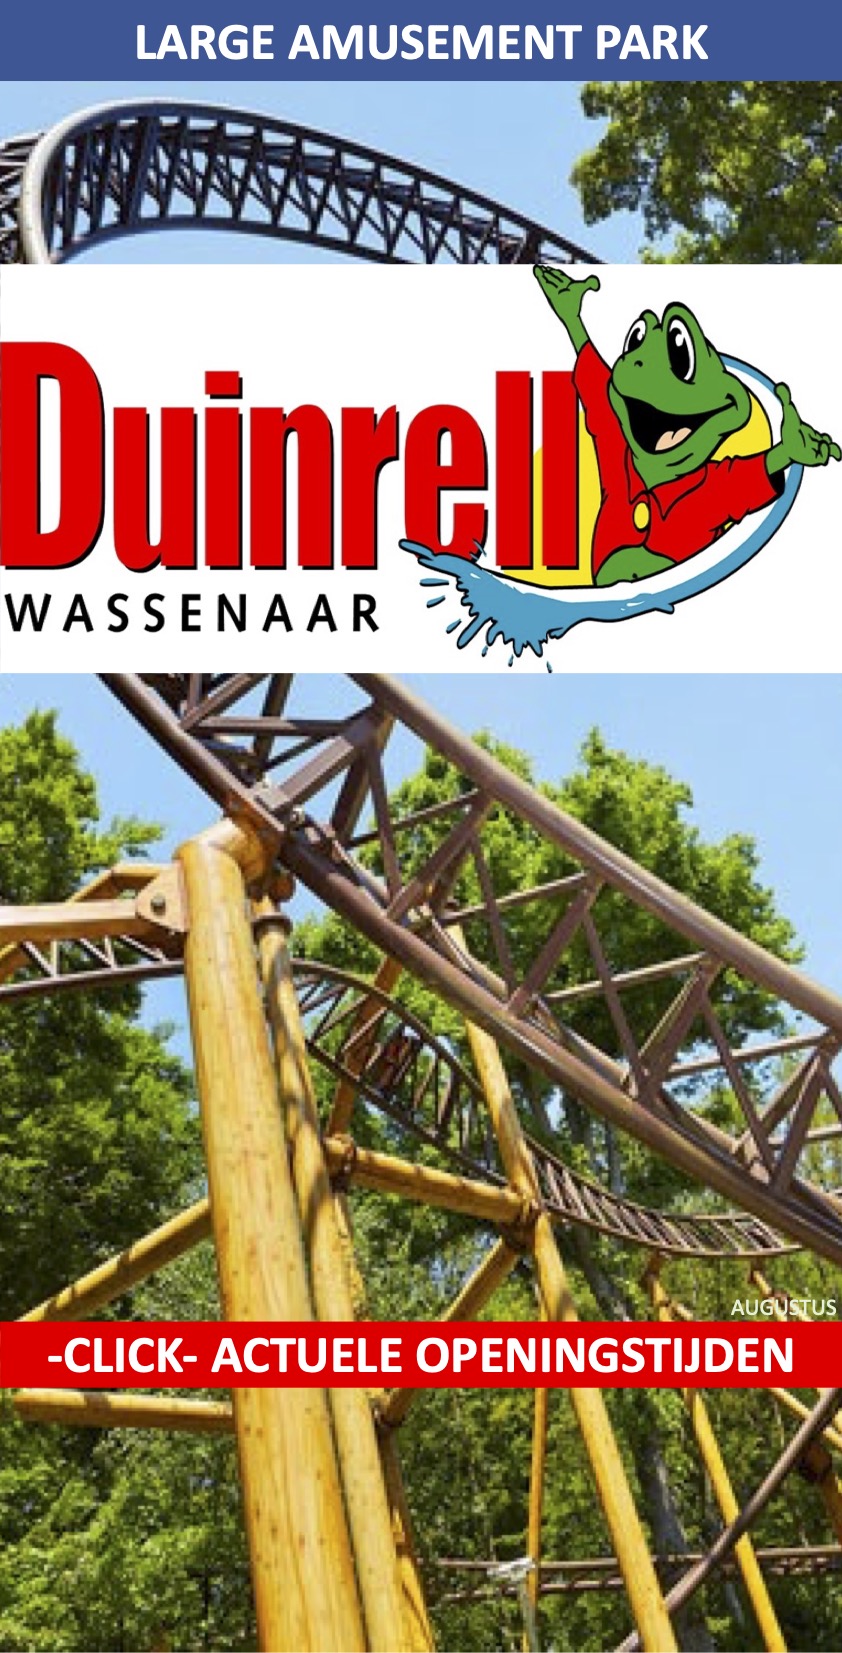 Duinrell Attractiepark Wassenaar augustus